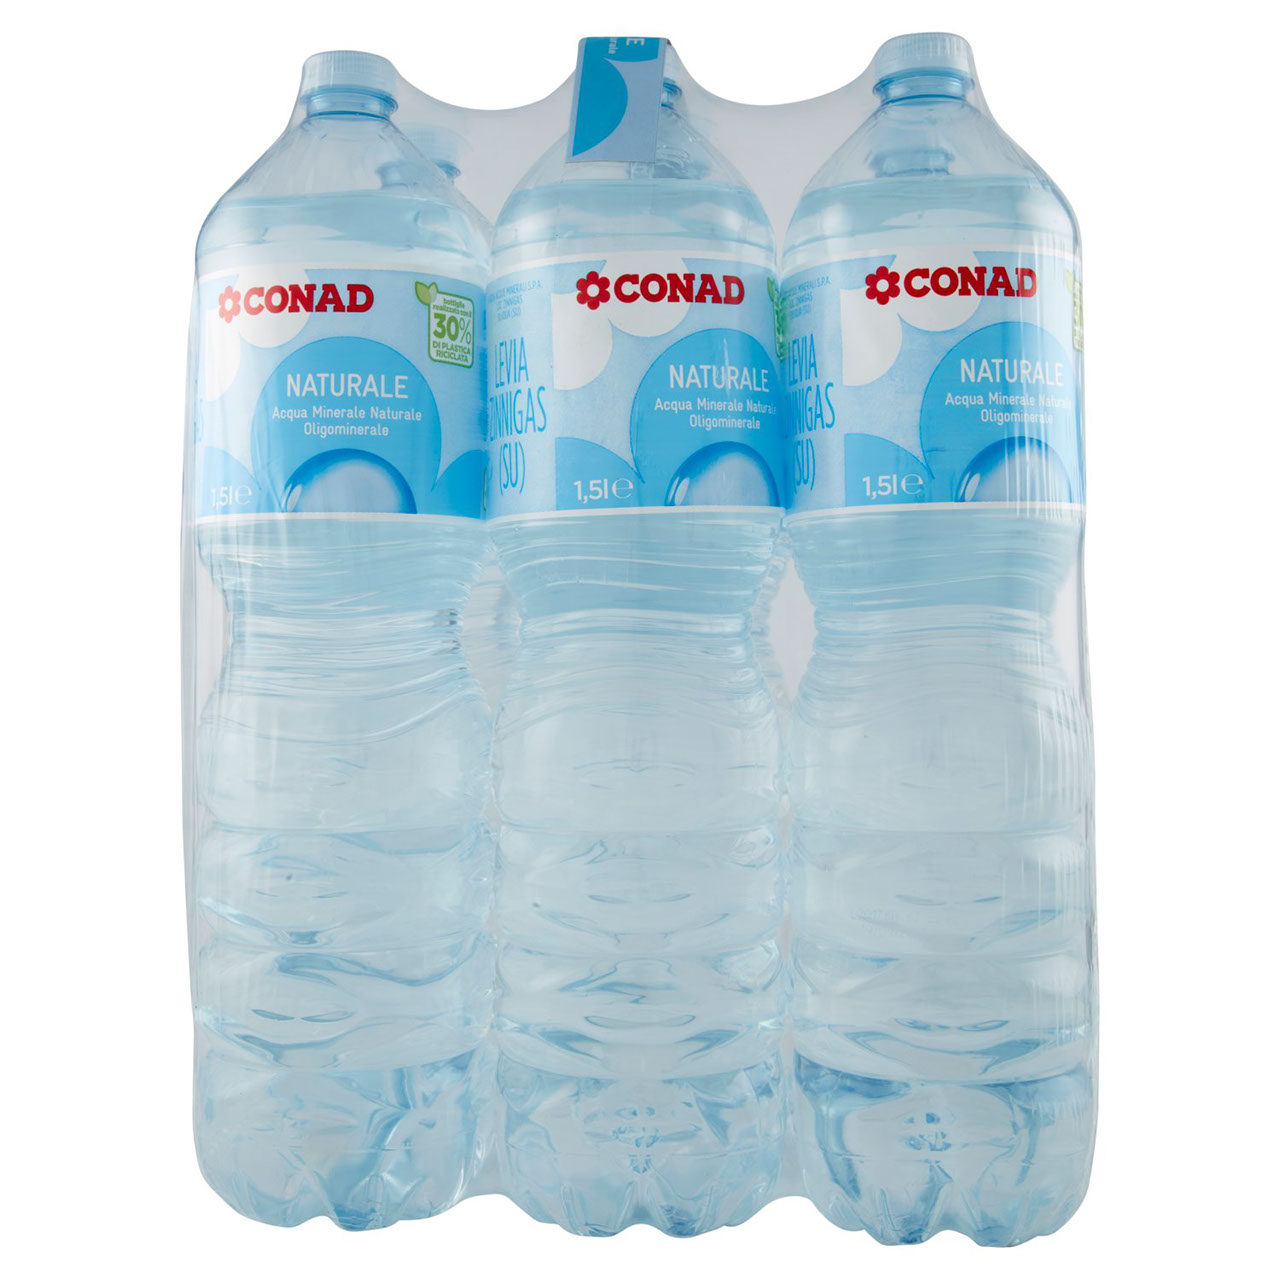 CONAD Naturale Acqua Minerale Naturale Oligominerale Levia 6 x 1,5 l